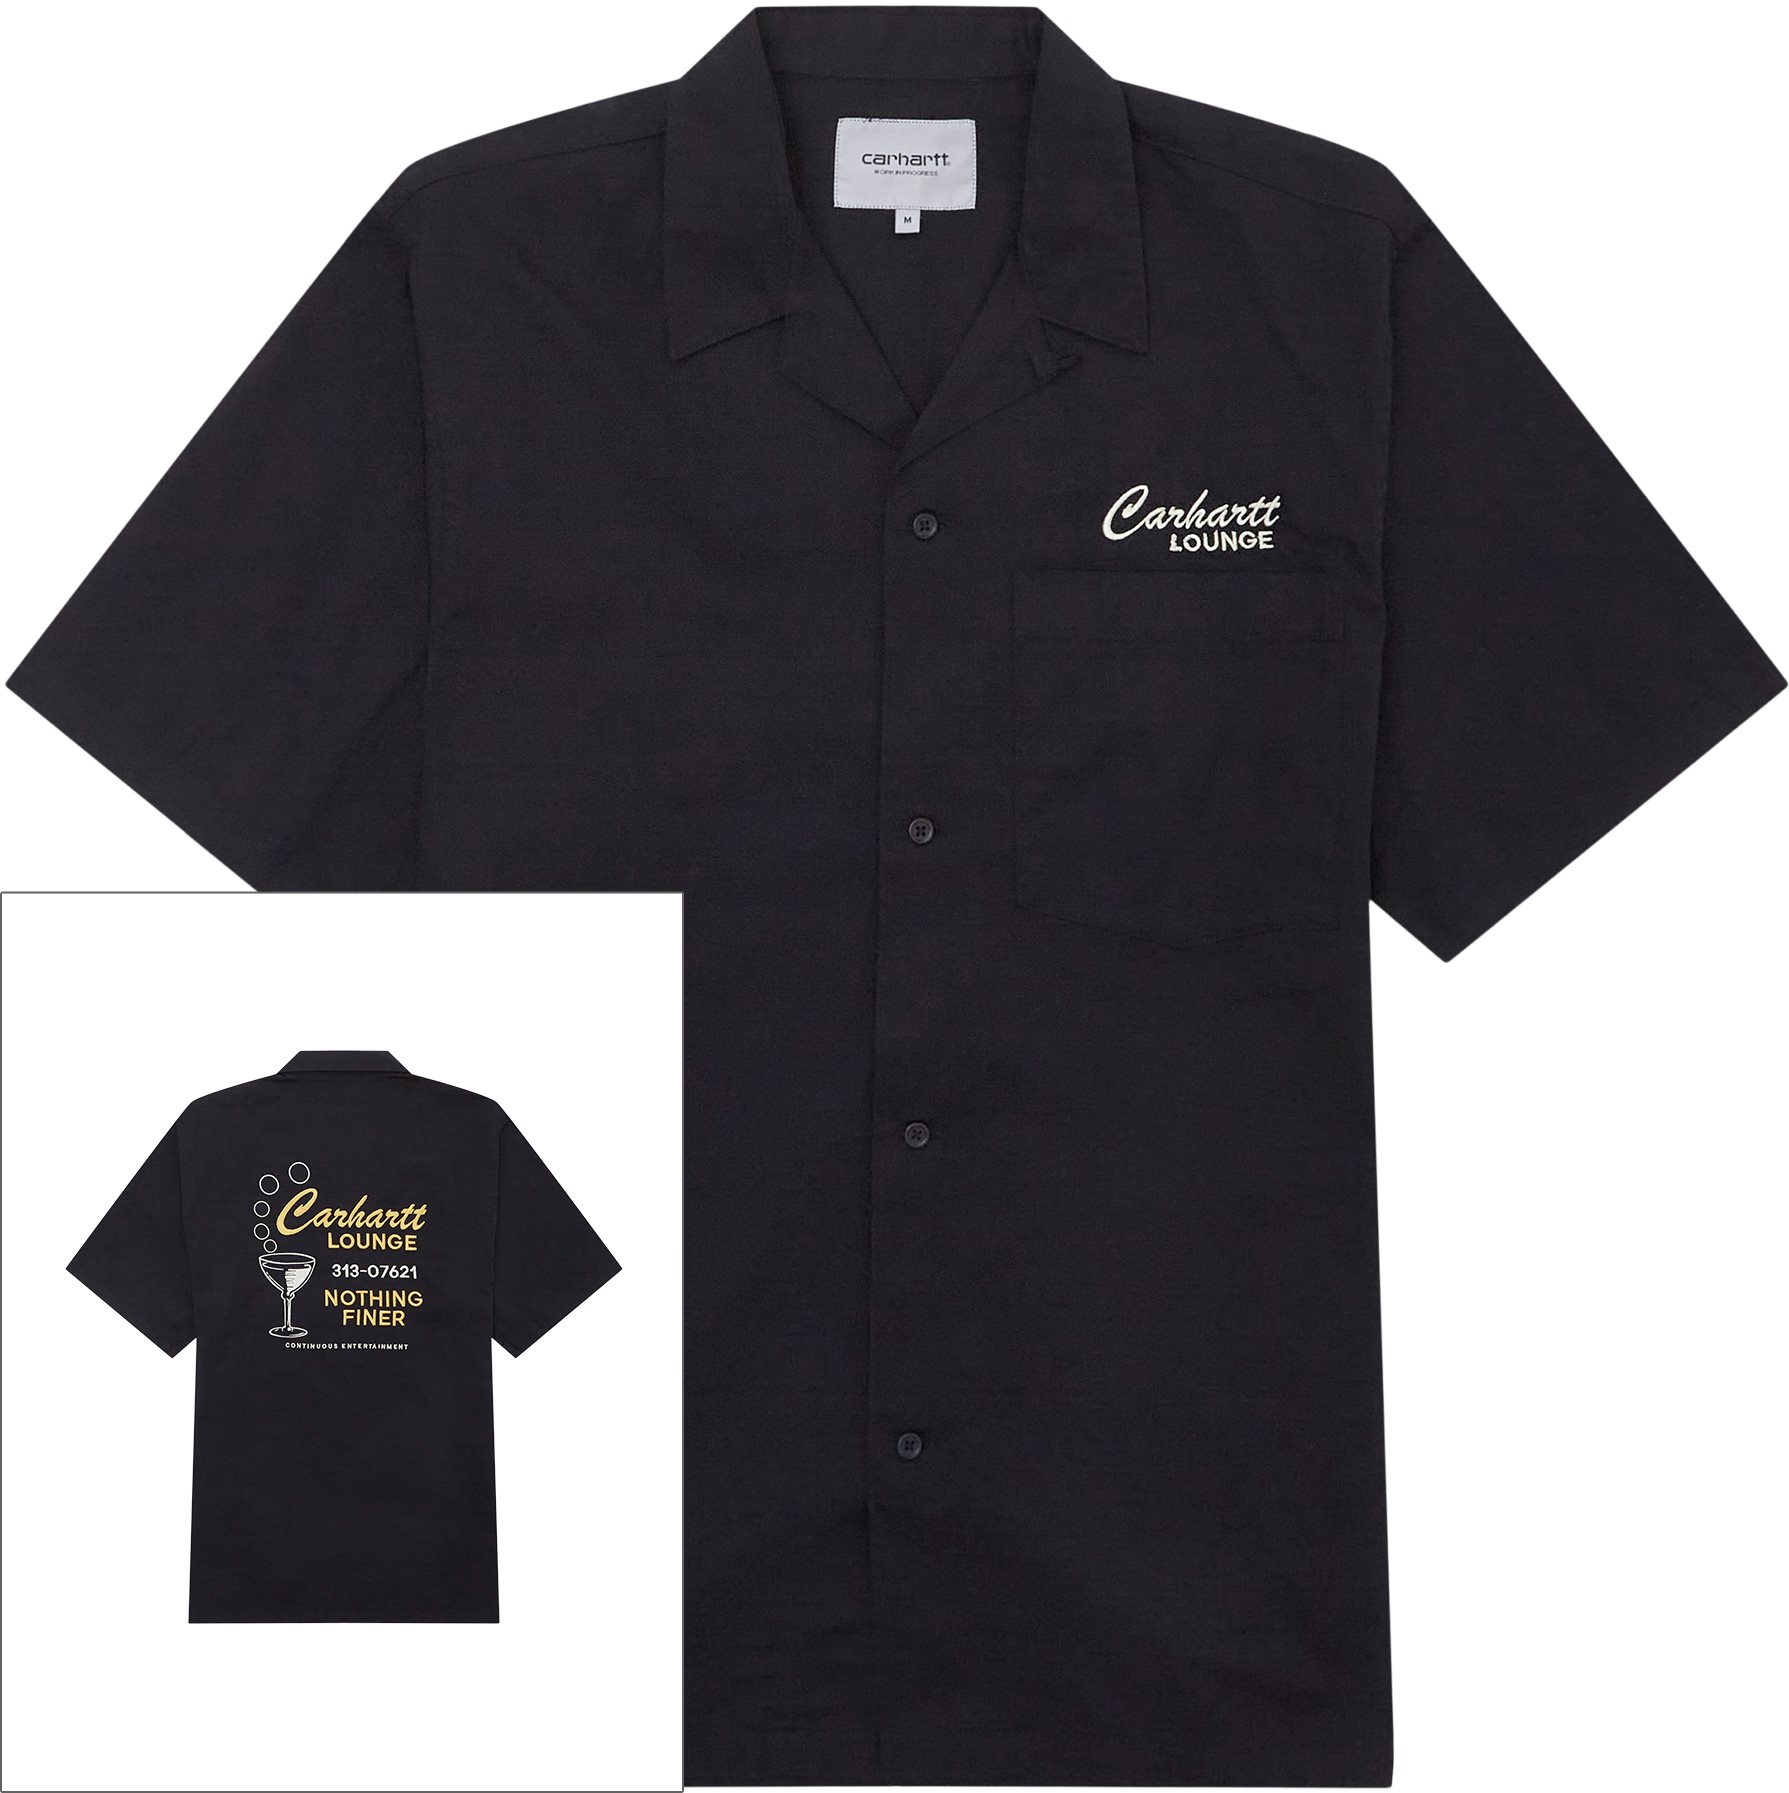 Carhartt Lounge K/æ Skjorte I030046 - Shirts - Loose fit - Black